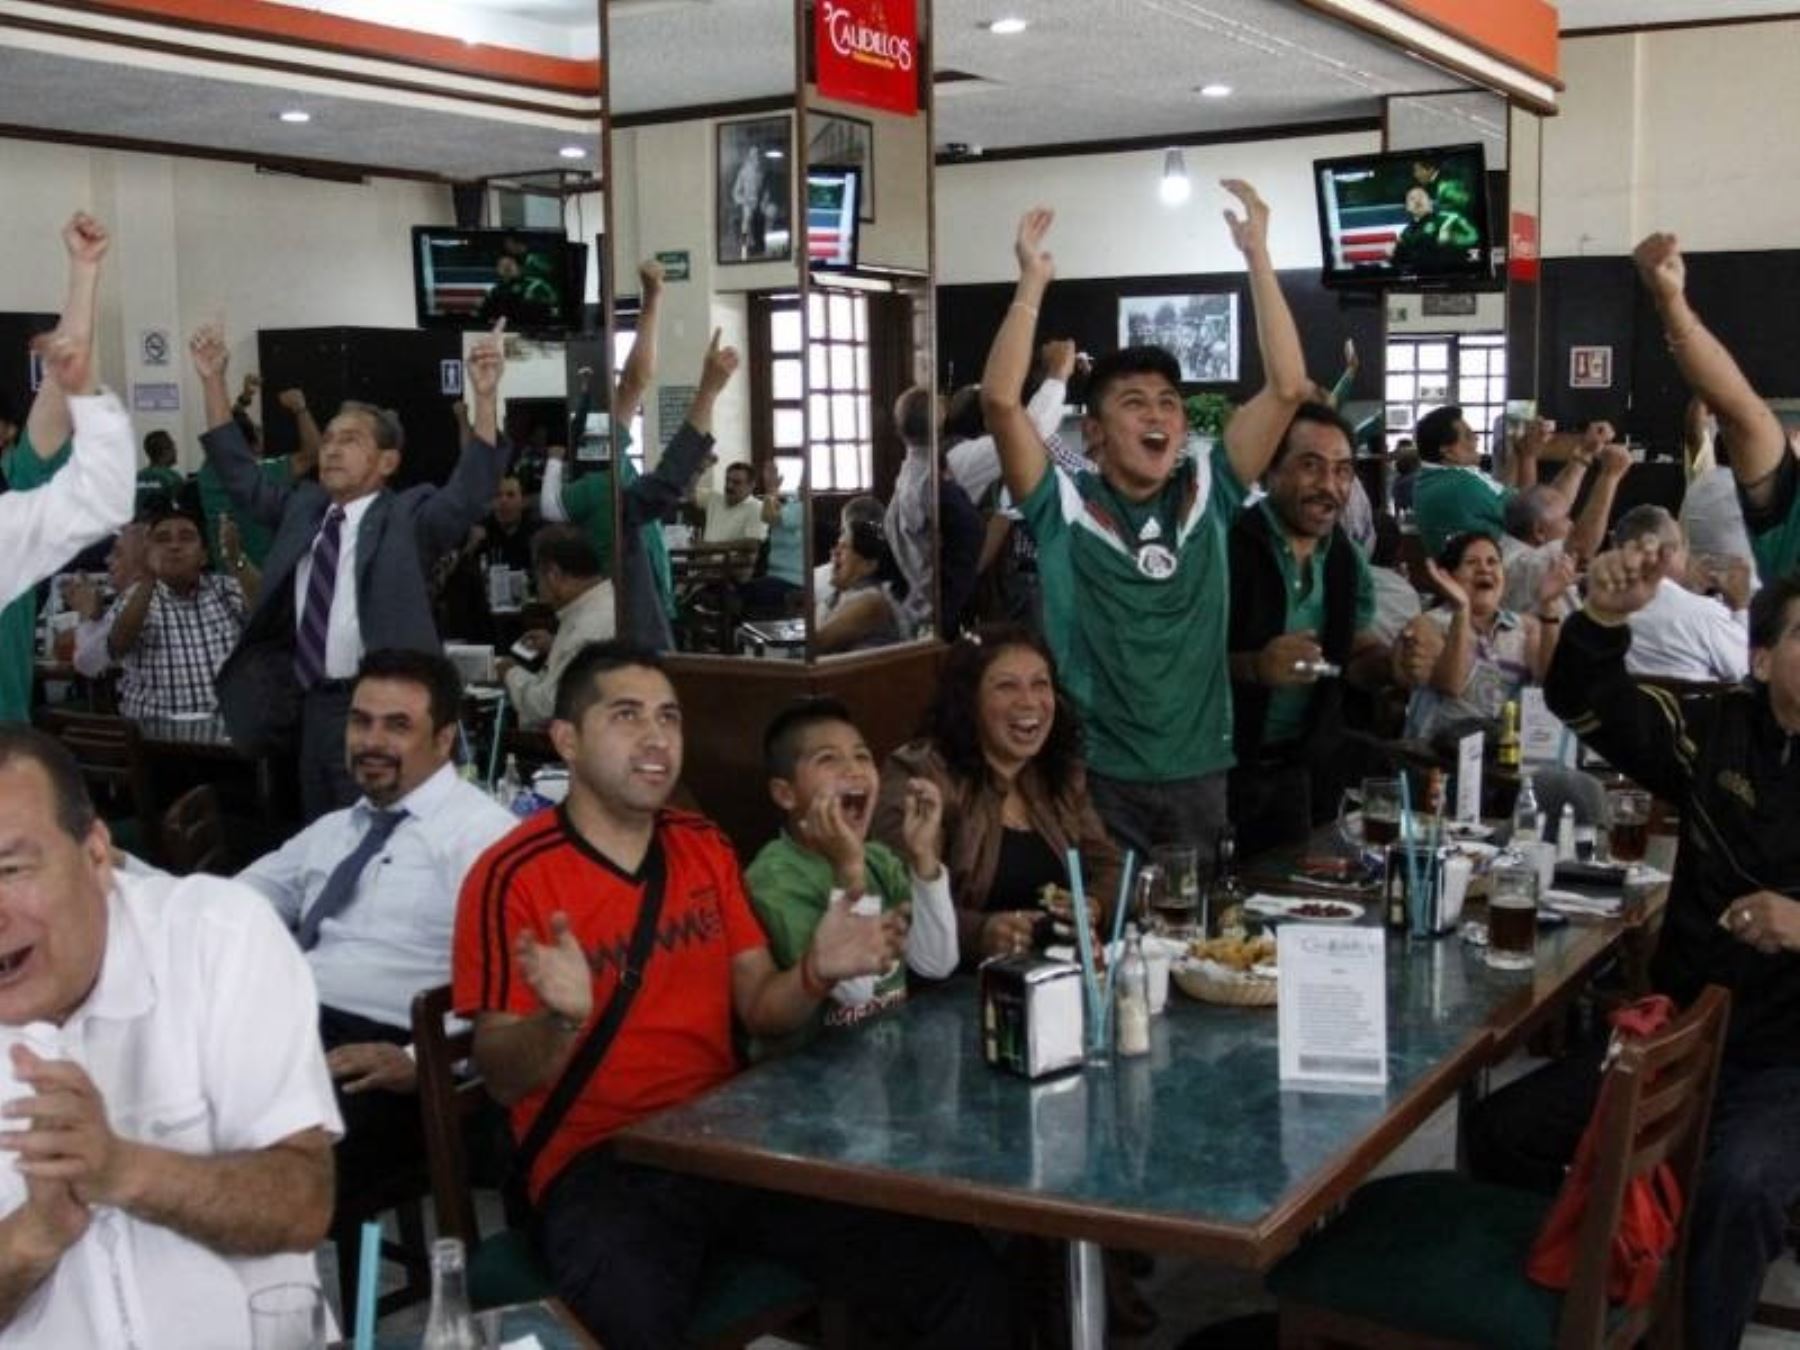 Recomiendan no beber alcohol en exceso durante partidos de Perú para evitar accidentes, vandalismo y muertes.